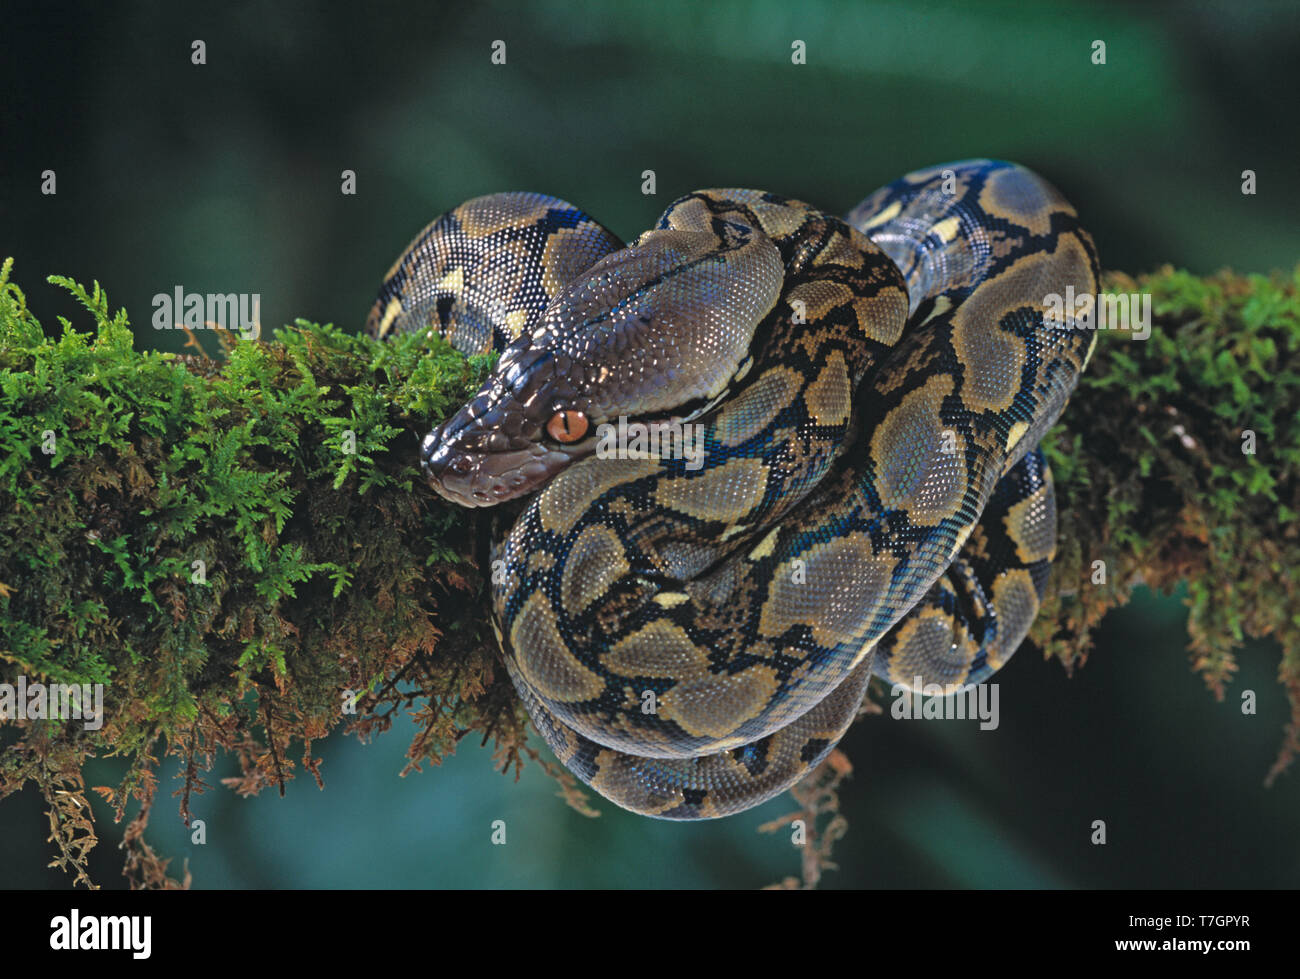 Indonesien. Sumatra. Tierwelt. Schlange. Netzpython. Python reticulatus. Stockfoto